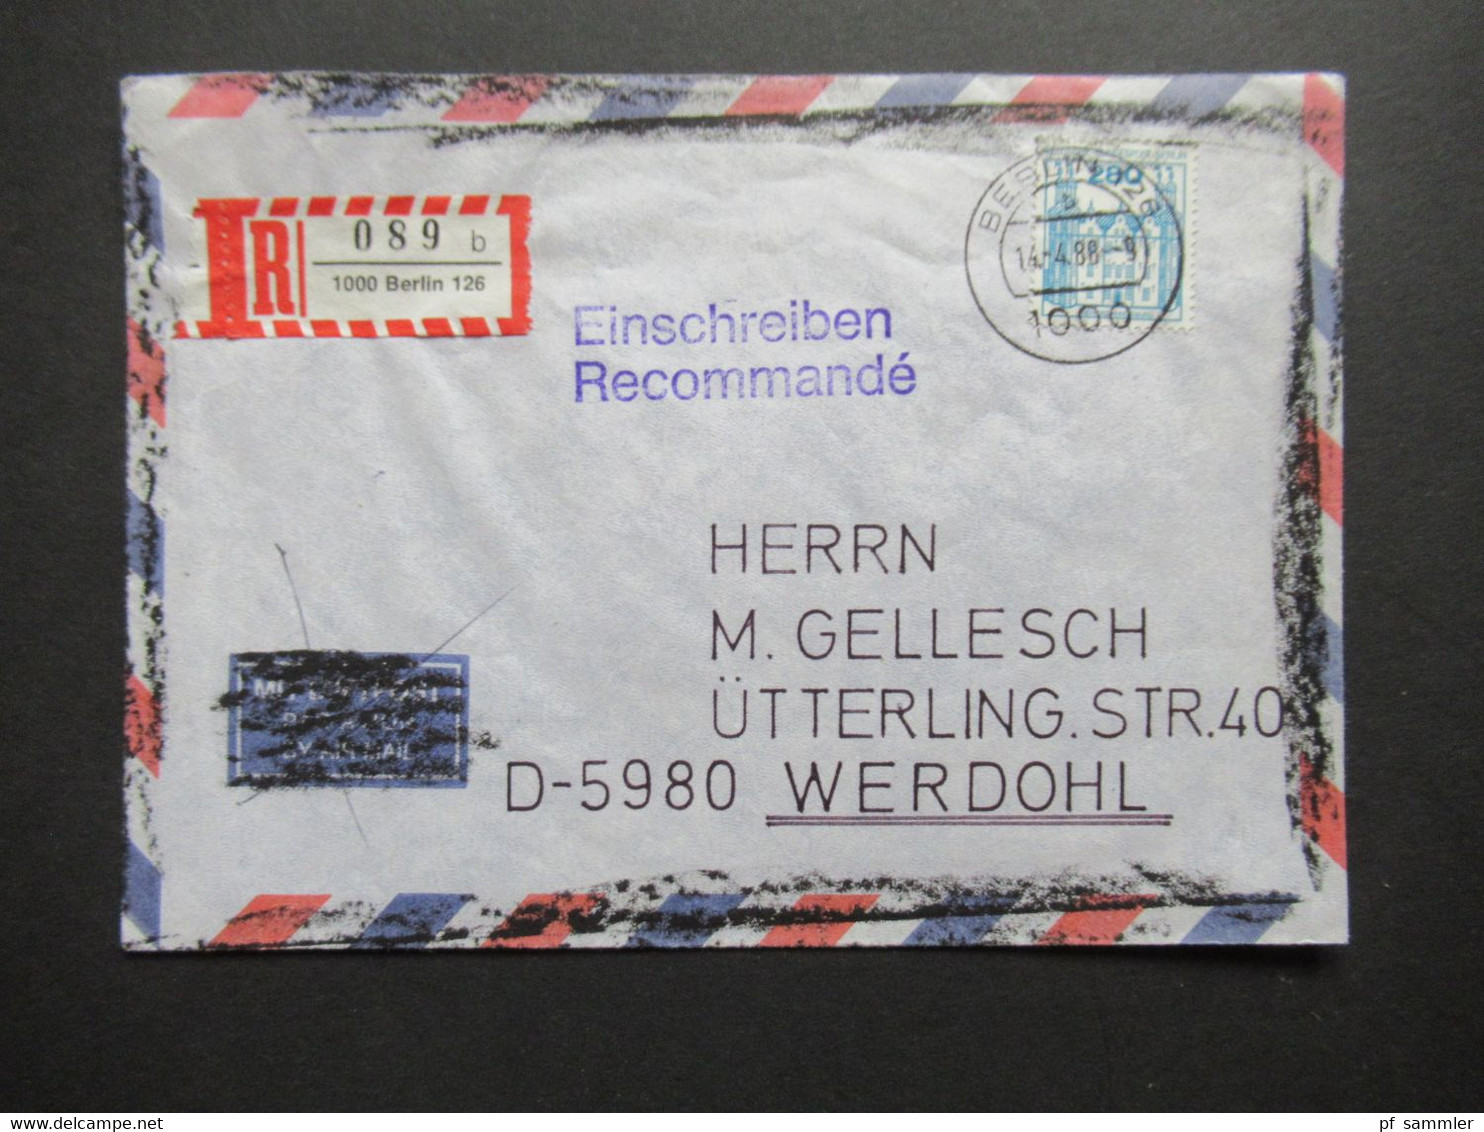 Berlin 1988 BuS Michel Nr. 676 EF Einschreiben Recommandé Berlin 126 - Werdohl Luftpost Umschlag Geschwärzt!! - Cartas & Documentos